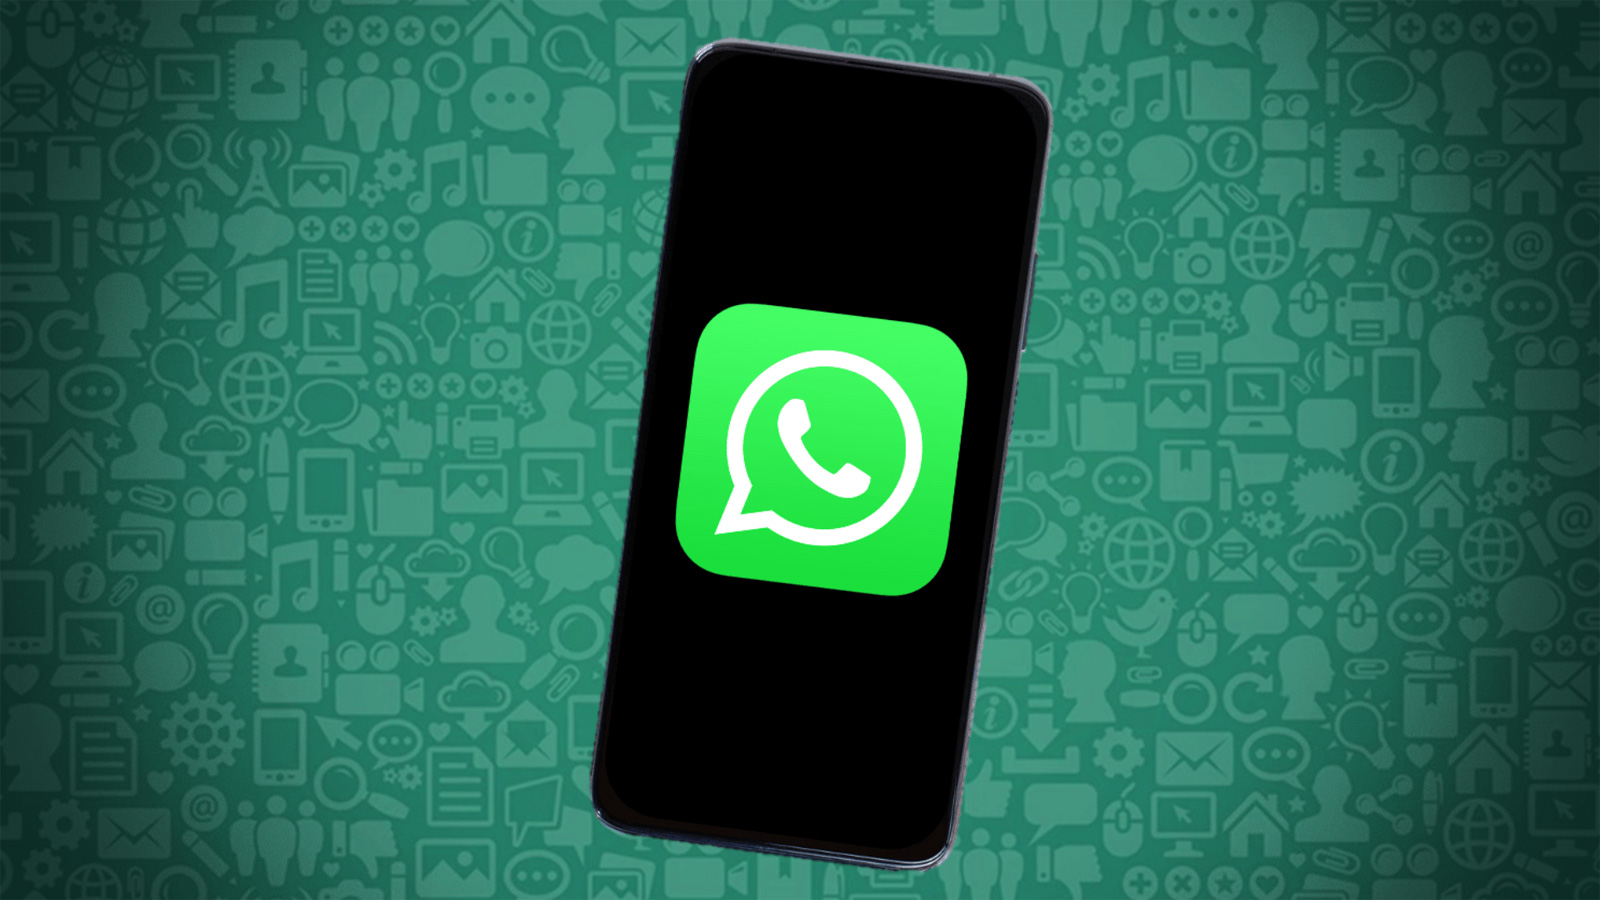 WhatsApp'ın çok kullanılan özelliği: 'Hakkımda' bölümü değişiyor